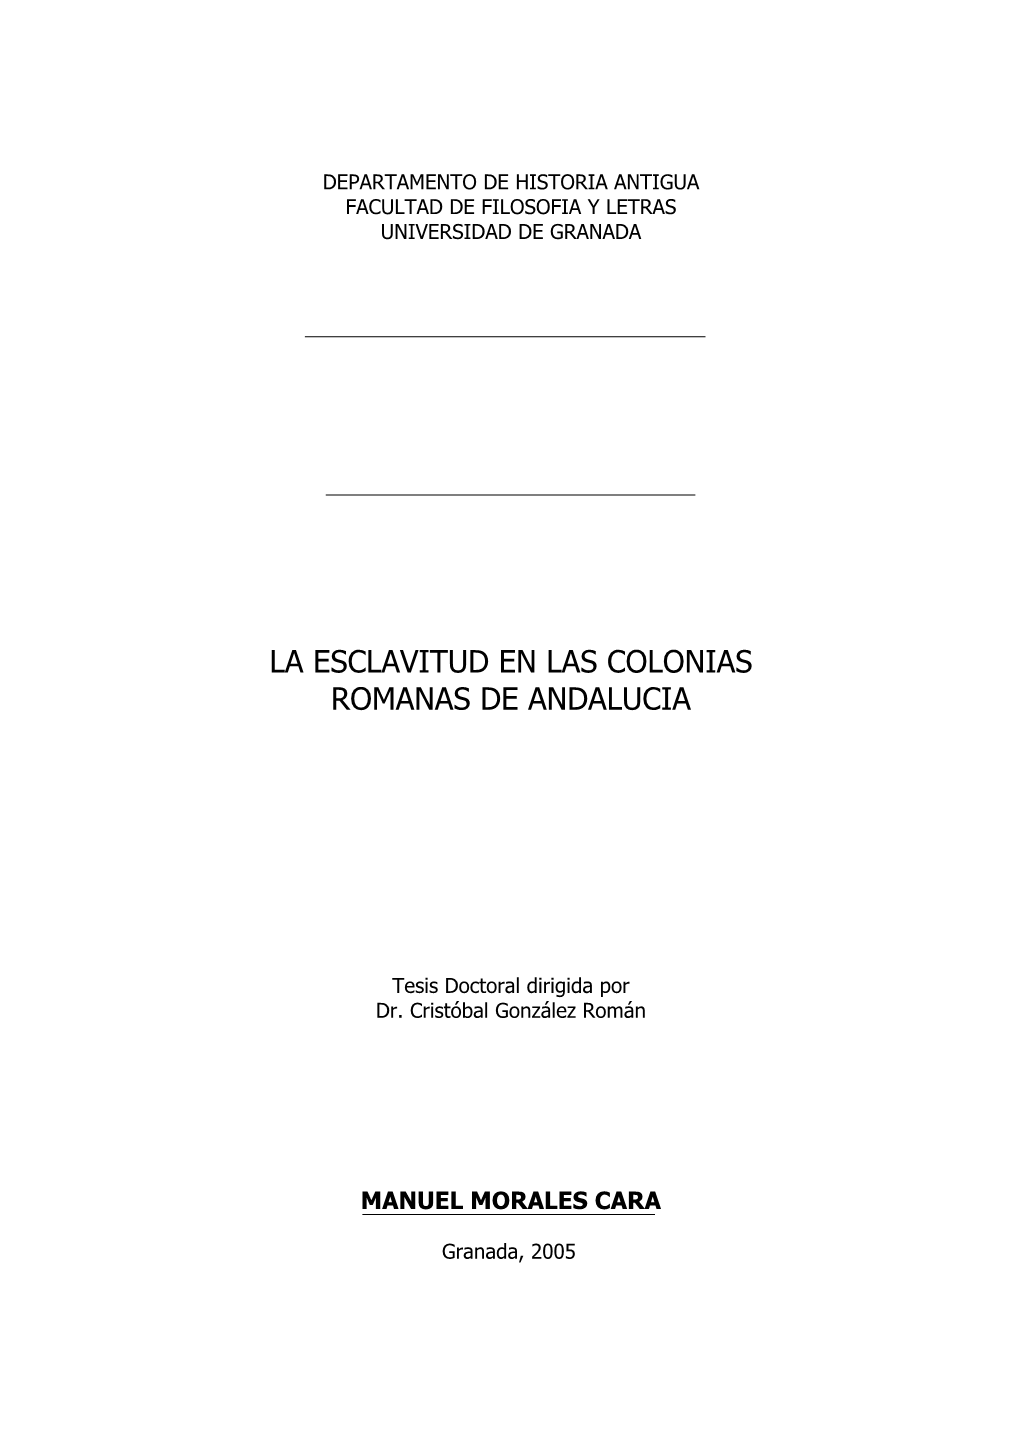 La Esclavitud En Las Colonias Romanas De Andalucia